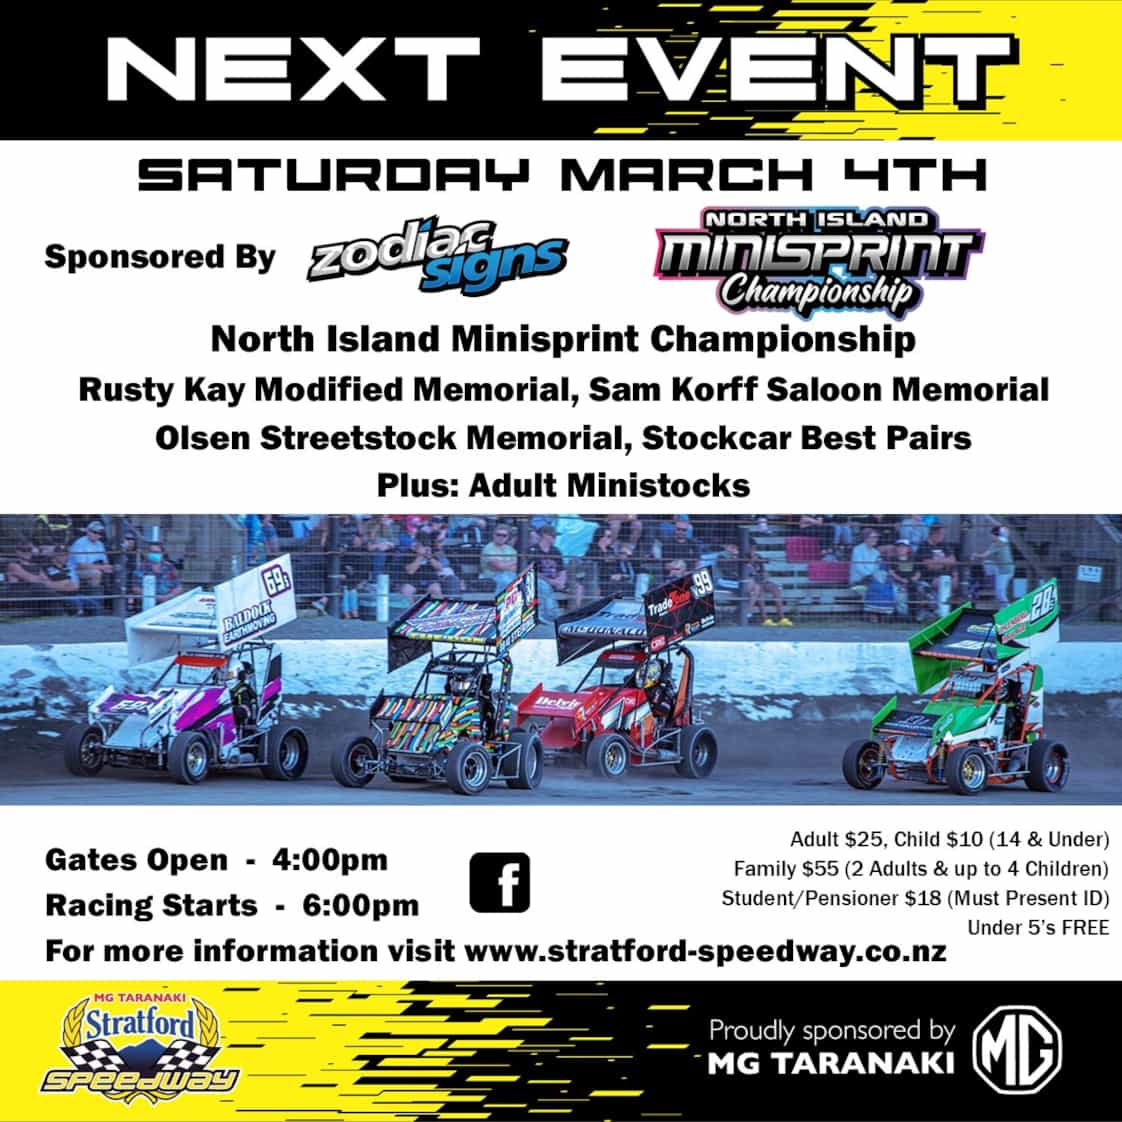 MG Taranaki Stratford Speedway, Saturday March 4th